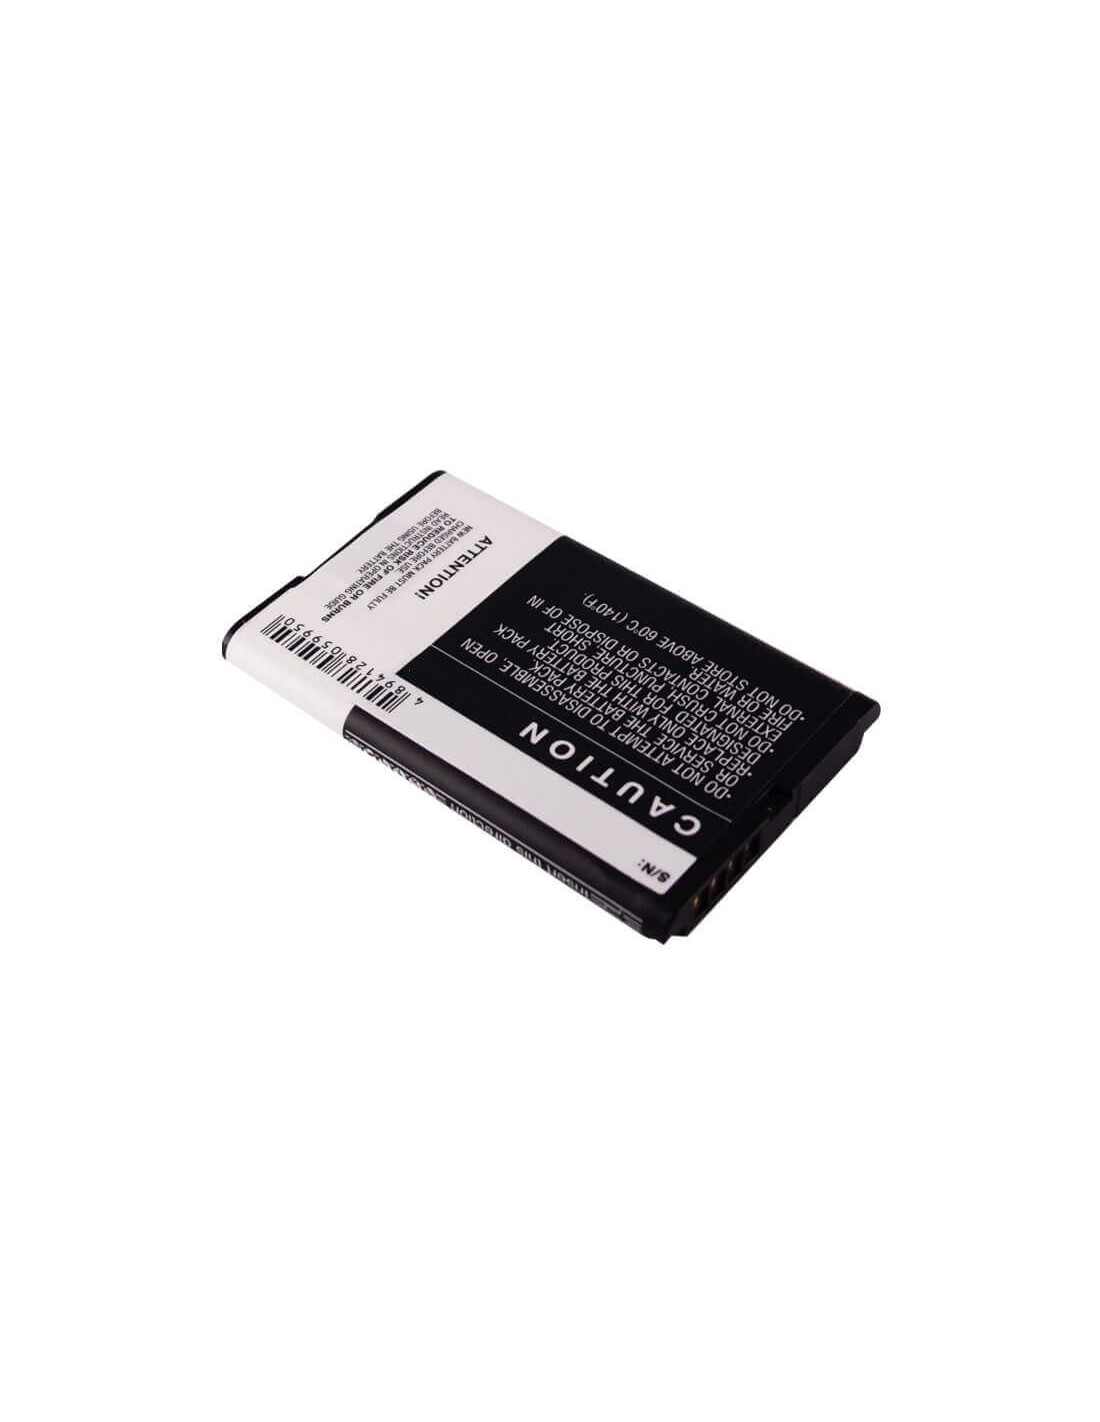 Battery for Blackberry 8700, 8700c, 8700f 3.7V, 1200mAh - 4.44Wh